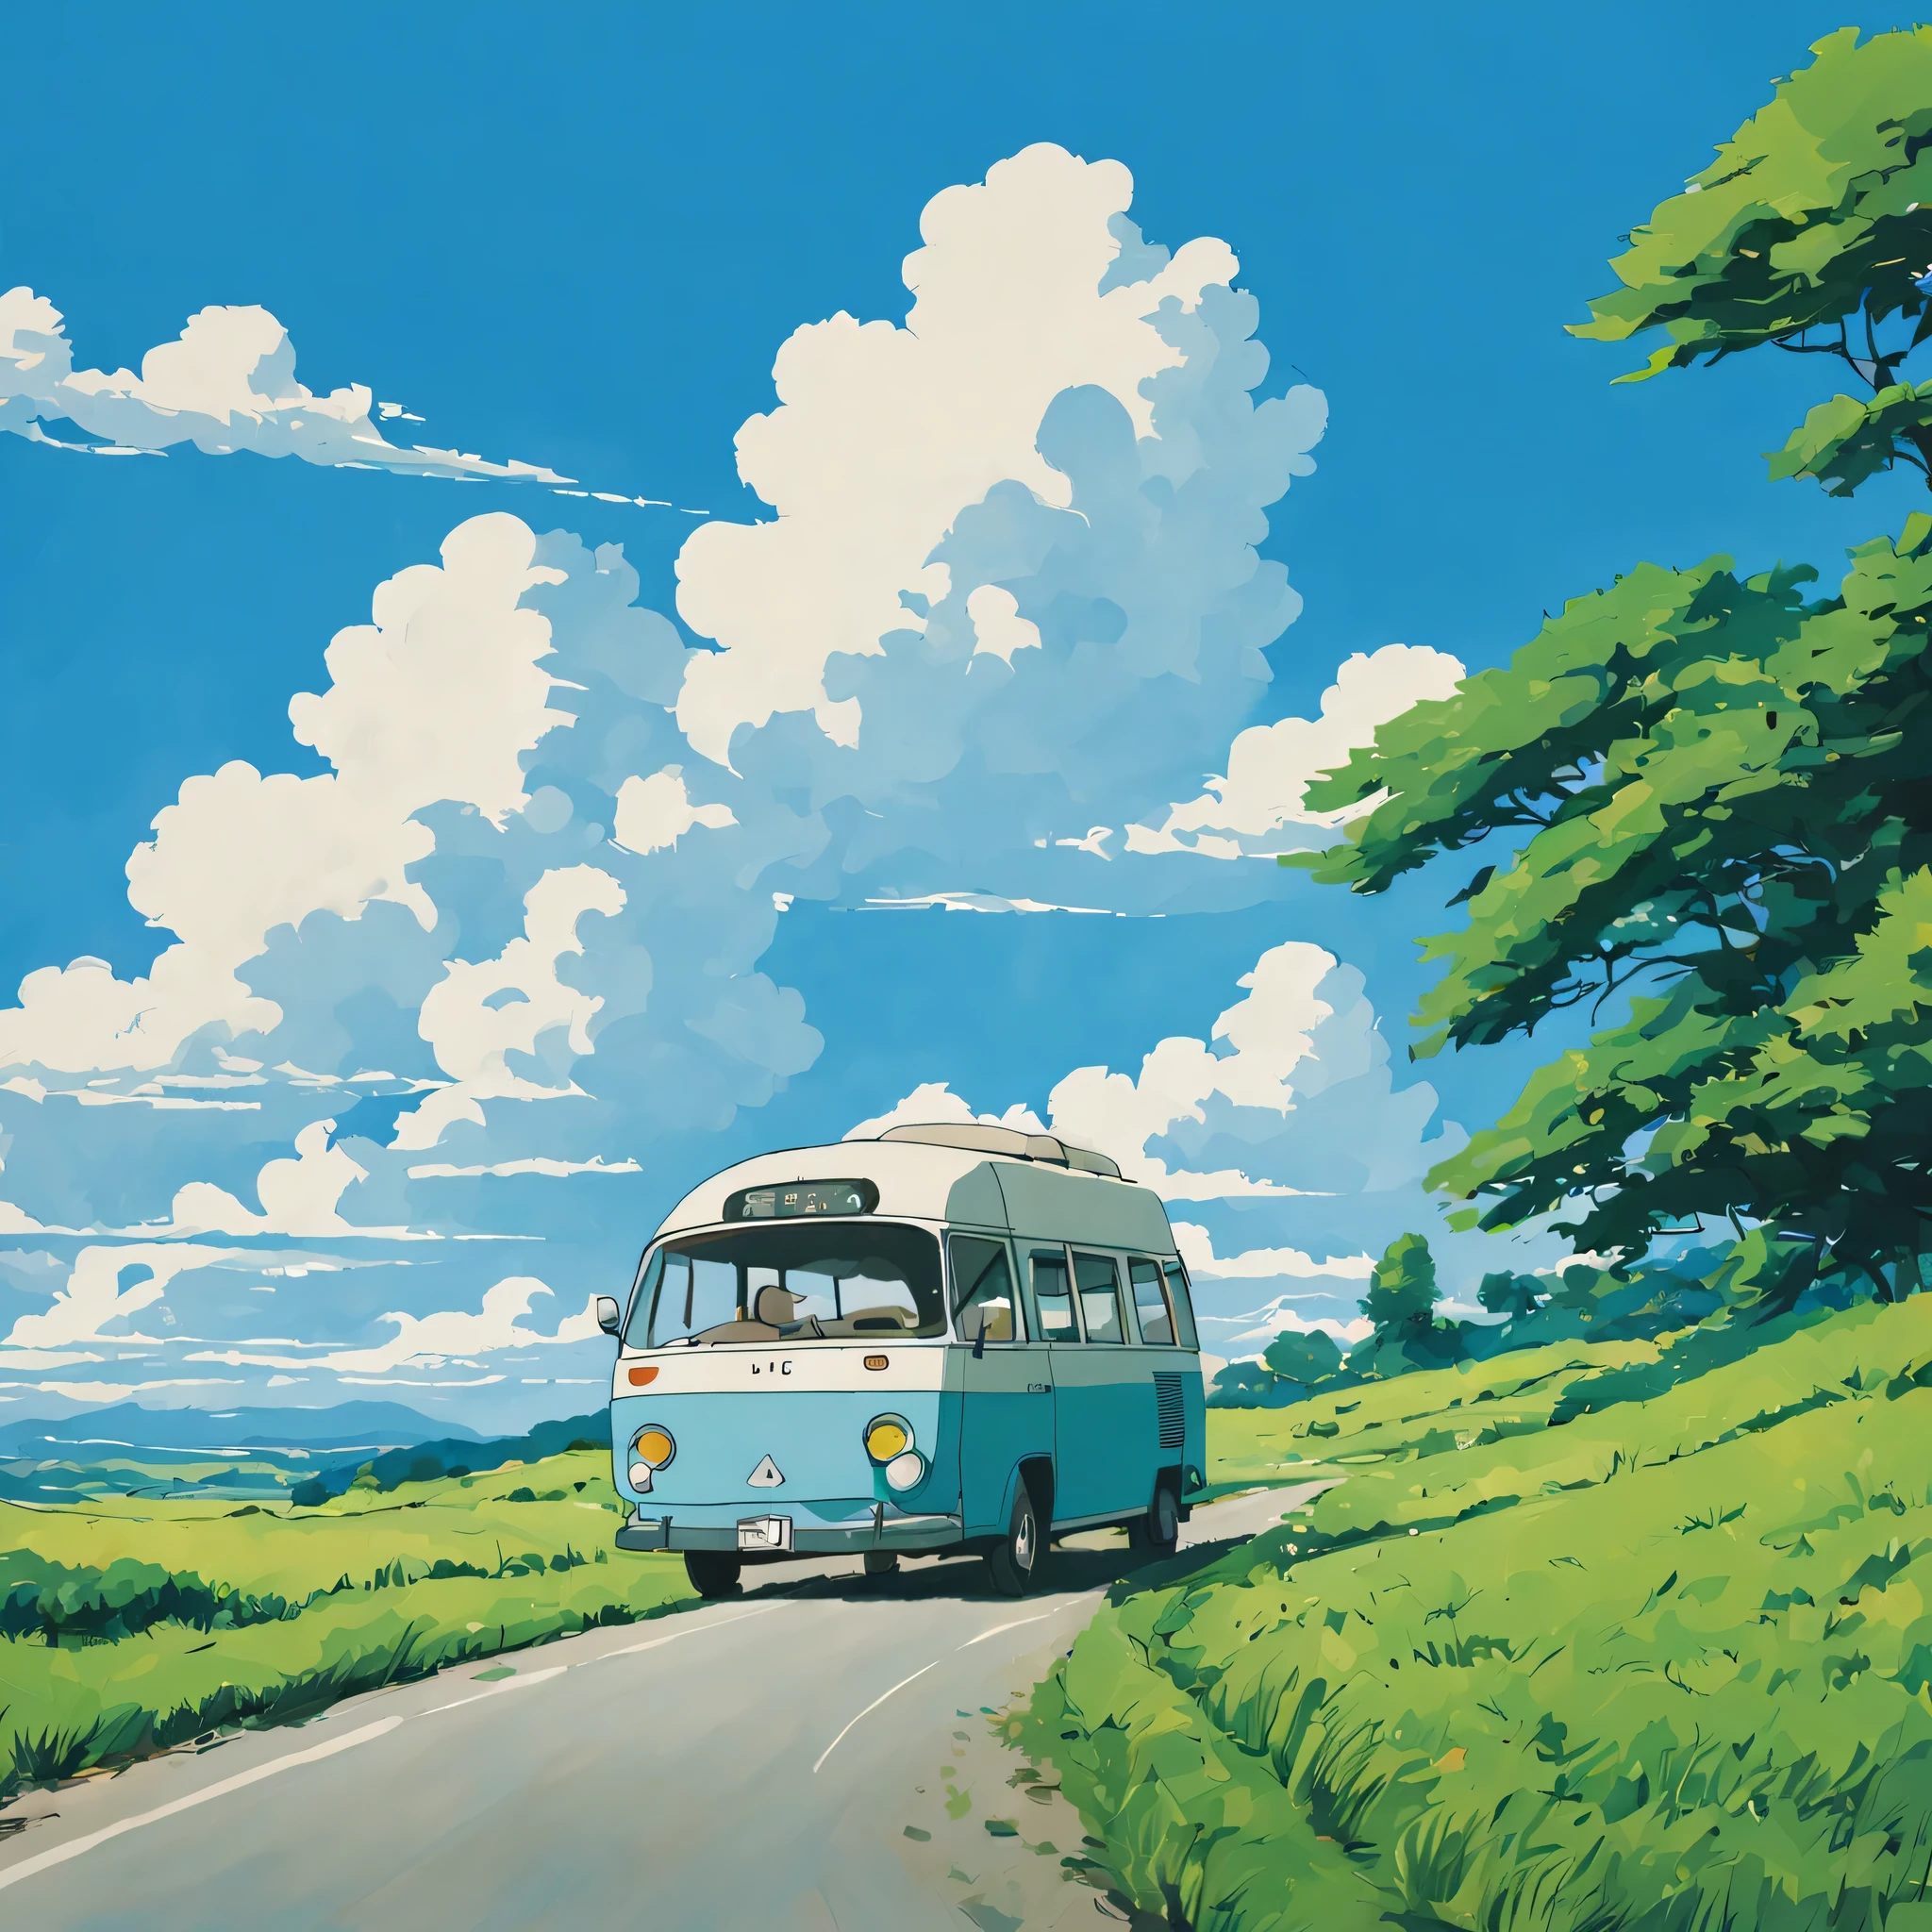 (Minimalism:1.4), Hay un minibús en la carretera., arte del estudio ghibli, Miyazaki, pasto con cielo azul y nubes blancas